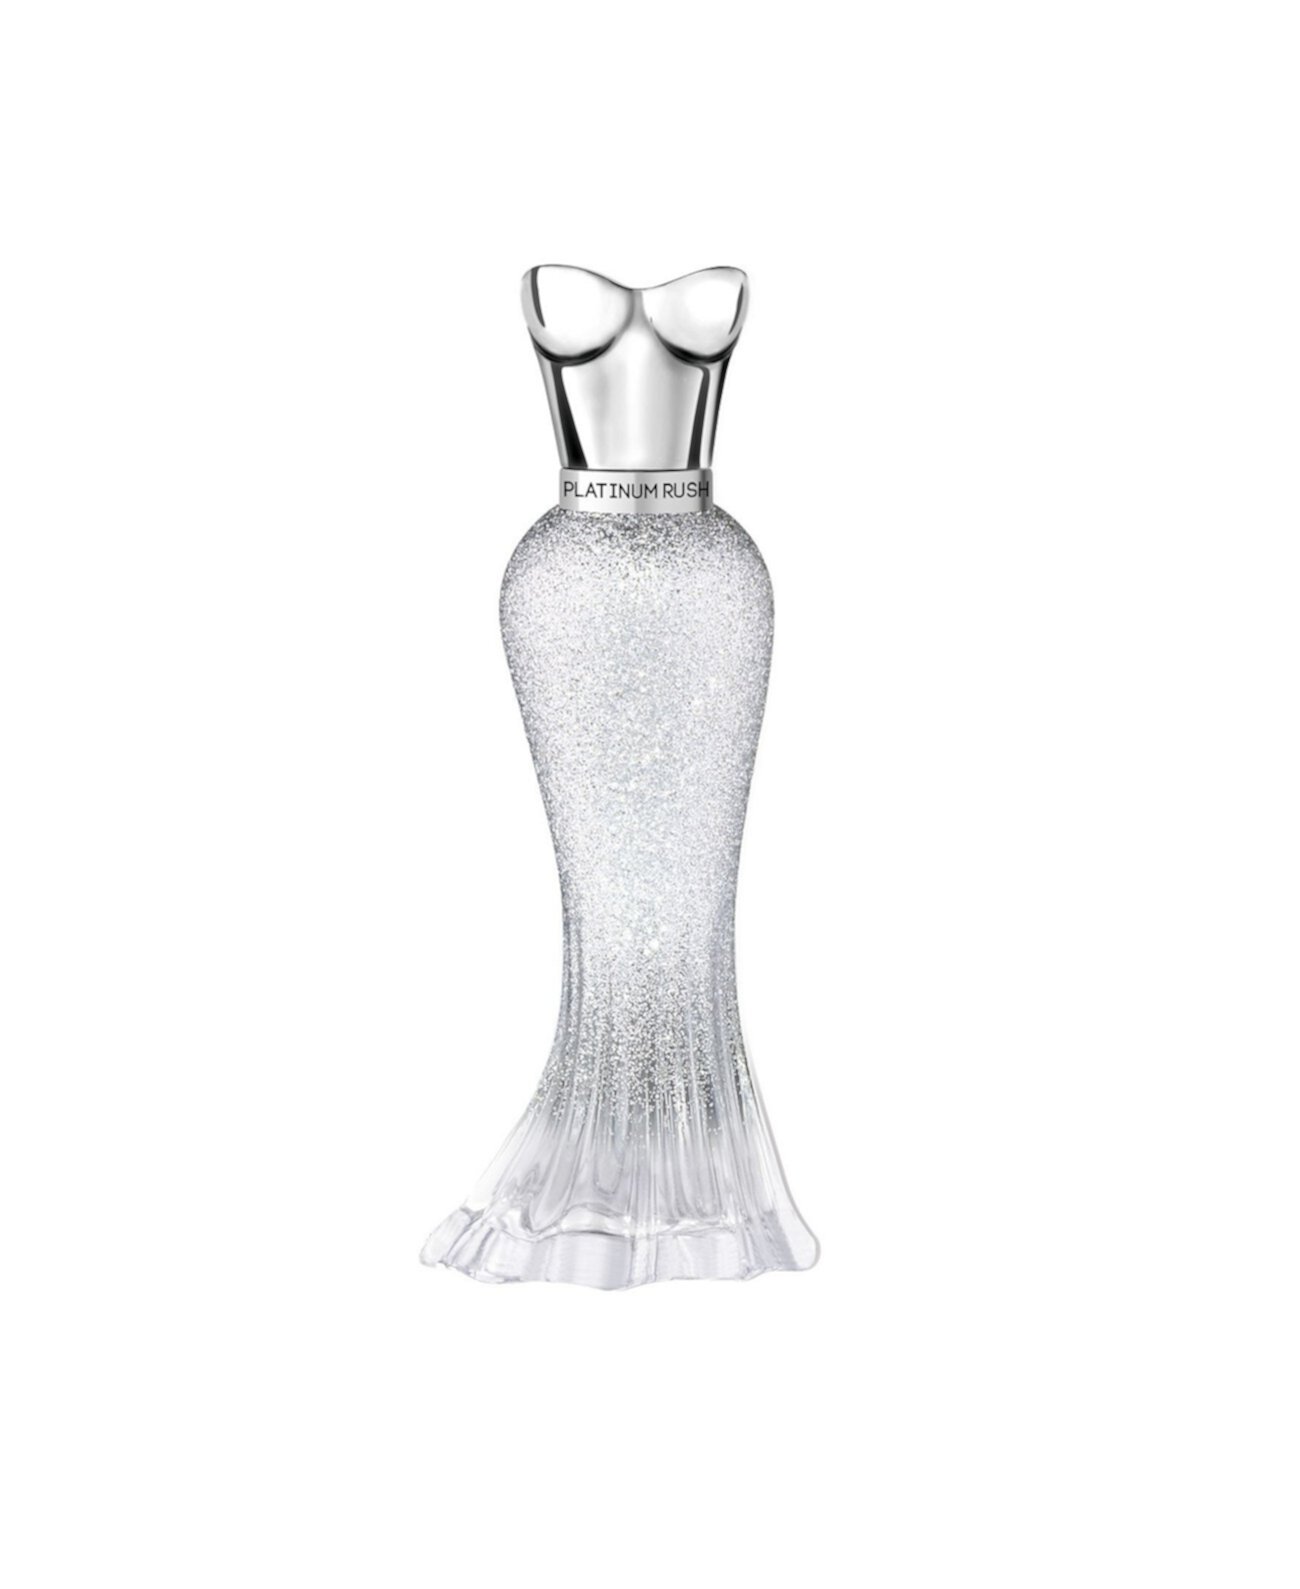 Женская парфюмированная вода Platinum Rush, 1 эт. Унция Paris Hilton